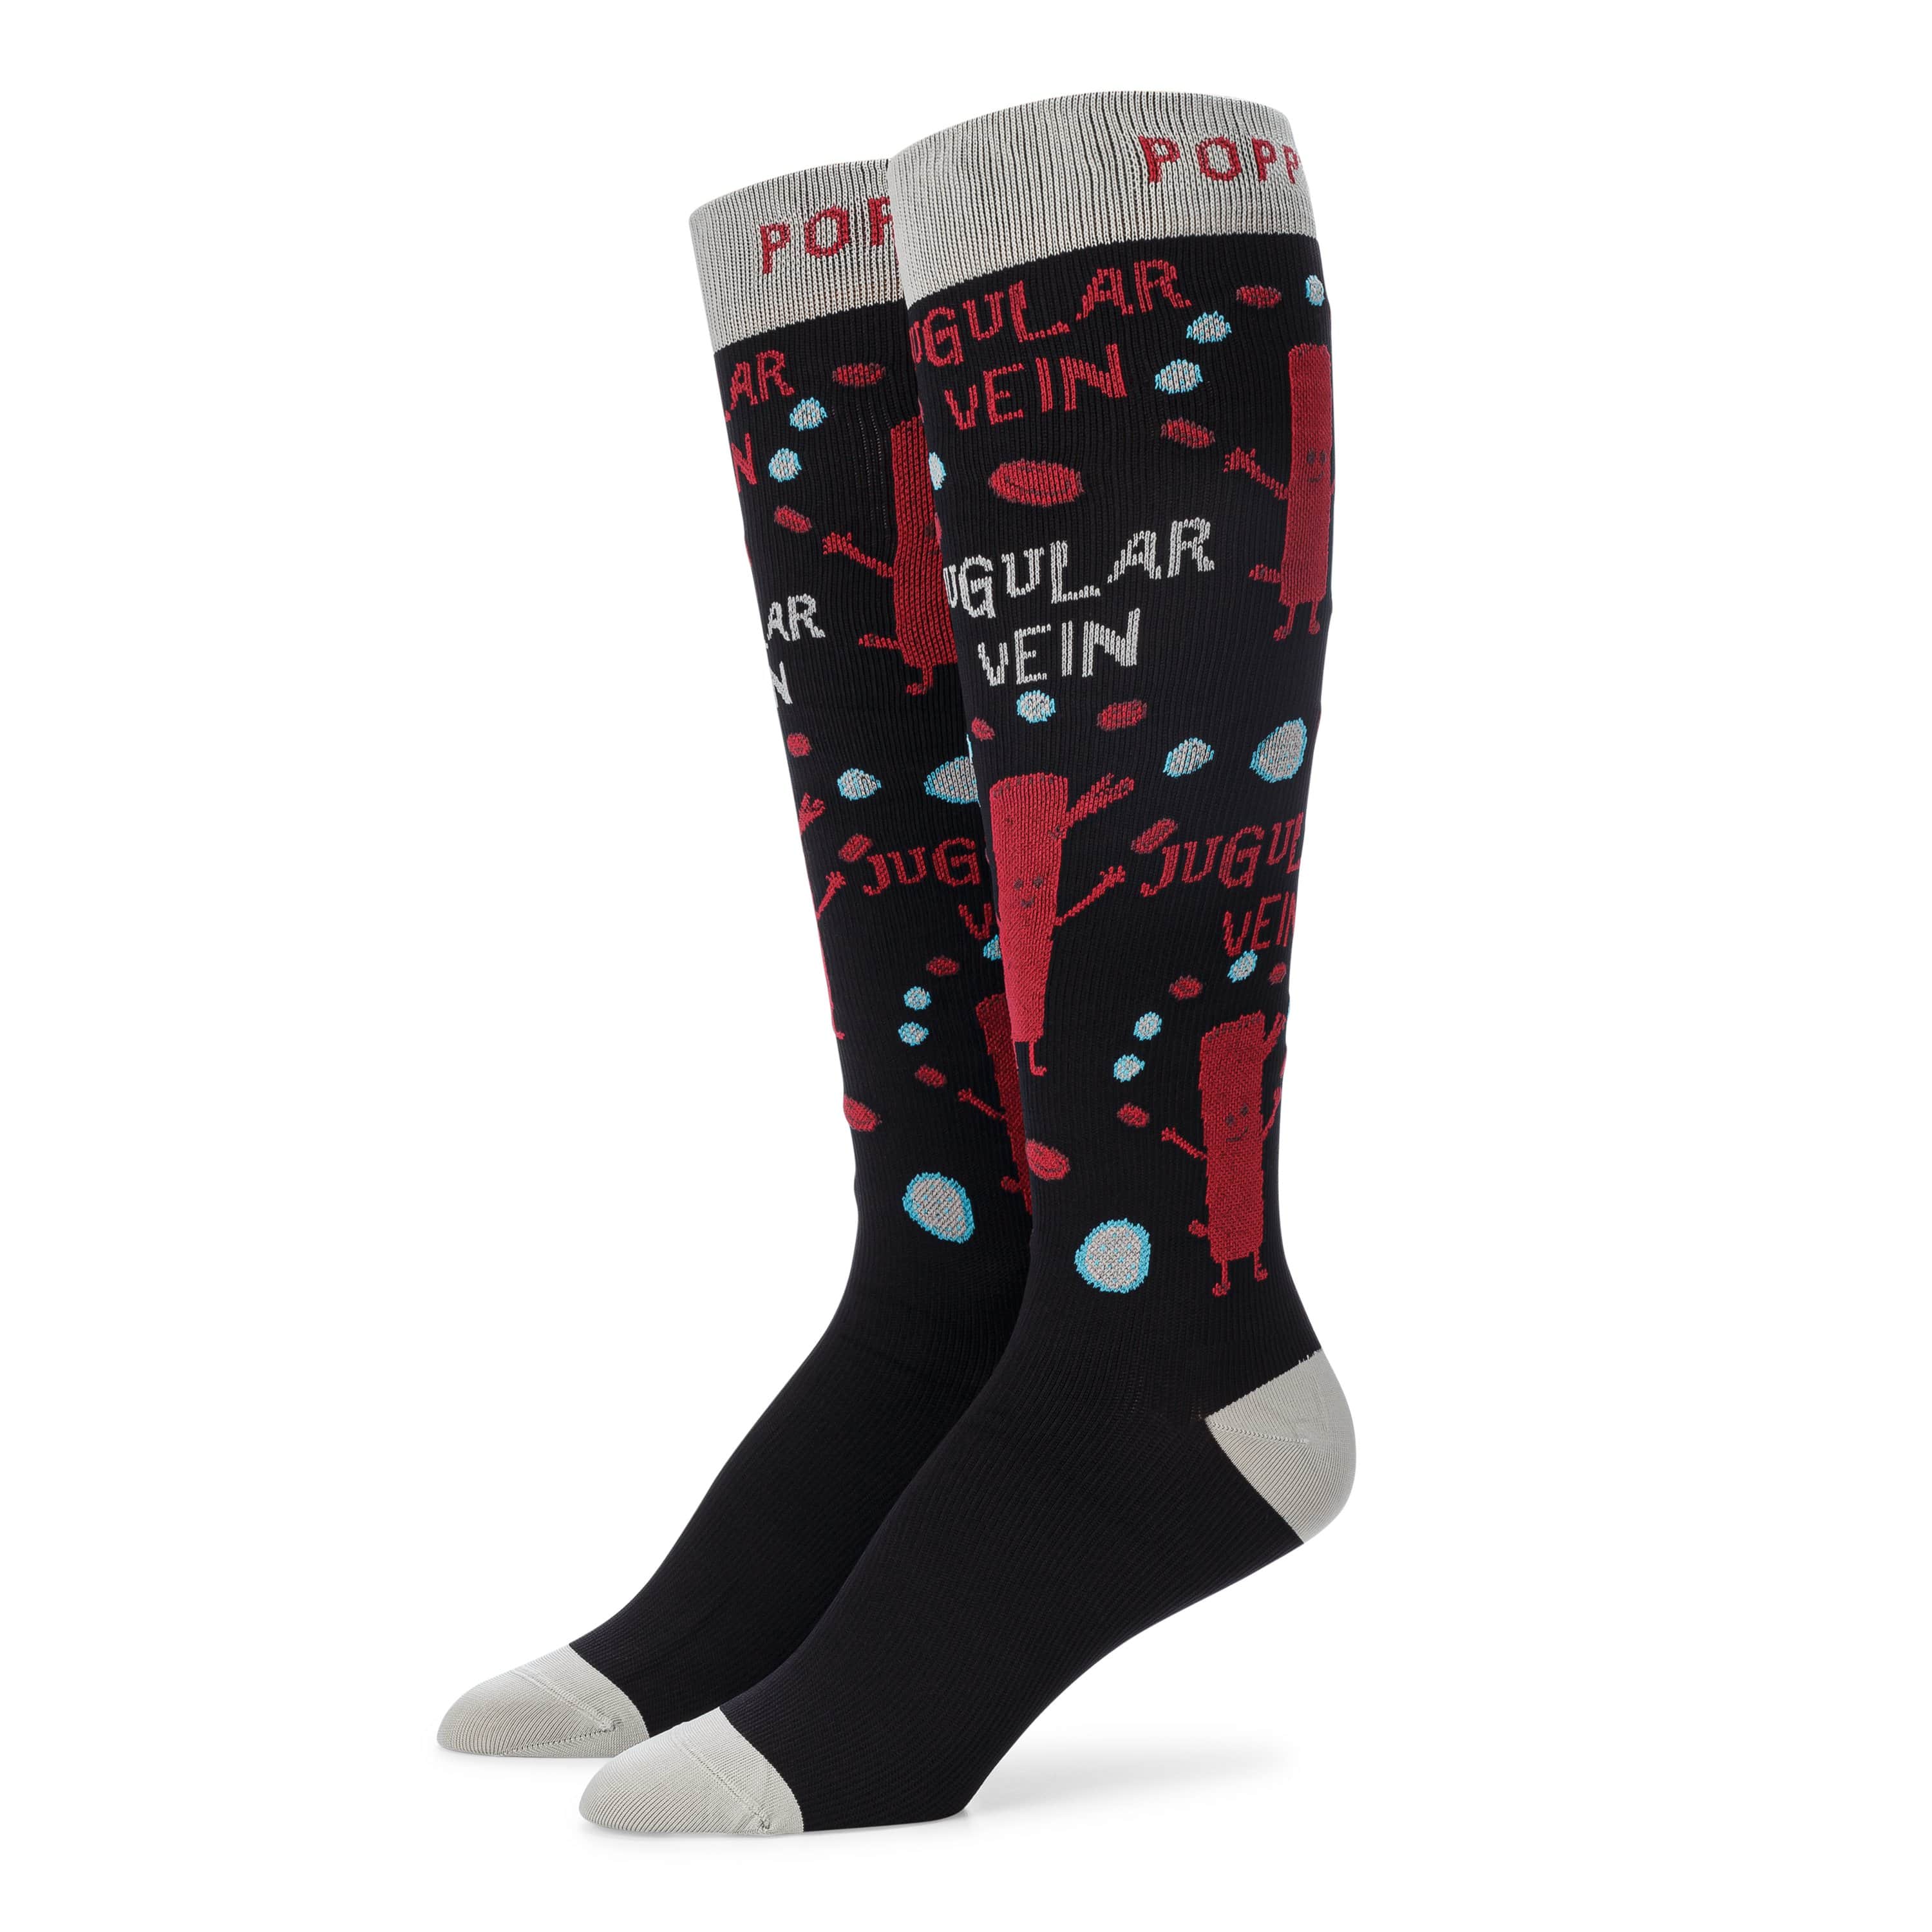 Poppy Scrubs Socks 🎁 Free Gift - Jugular Vein Socks